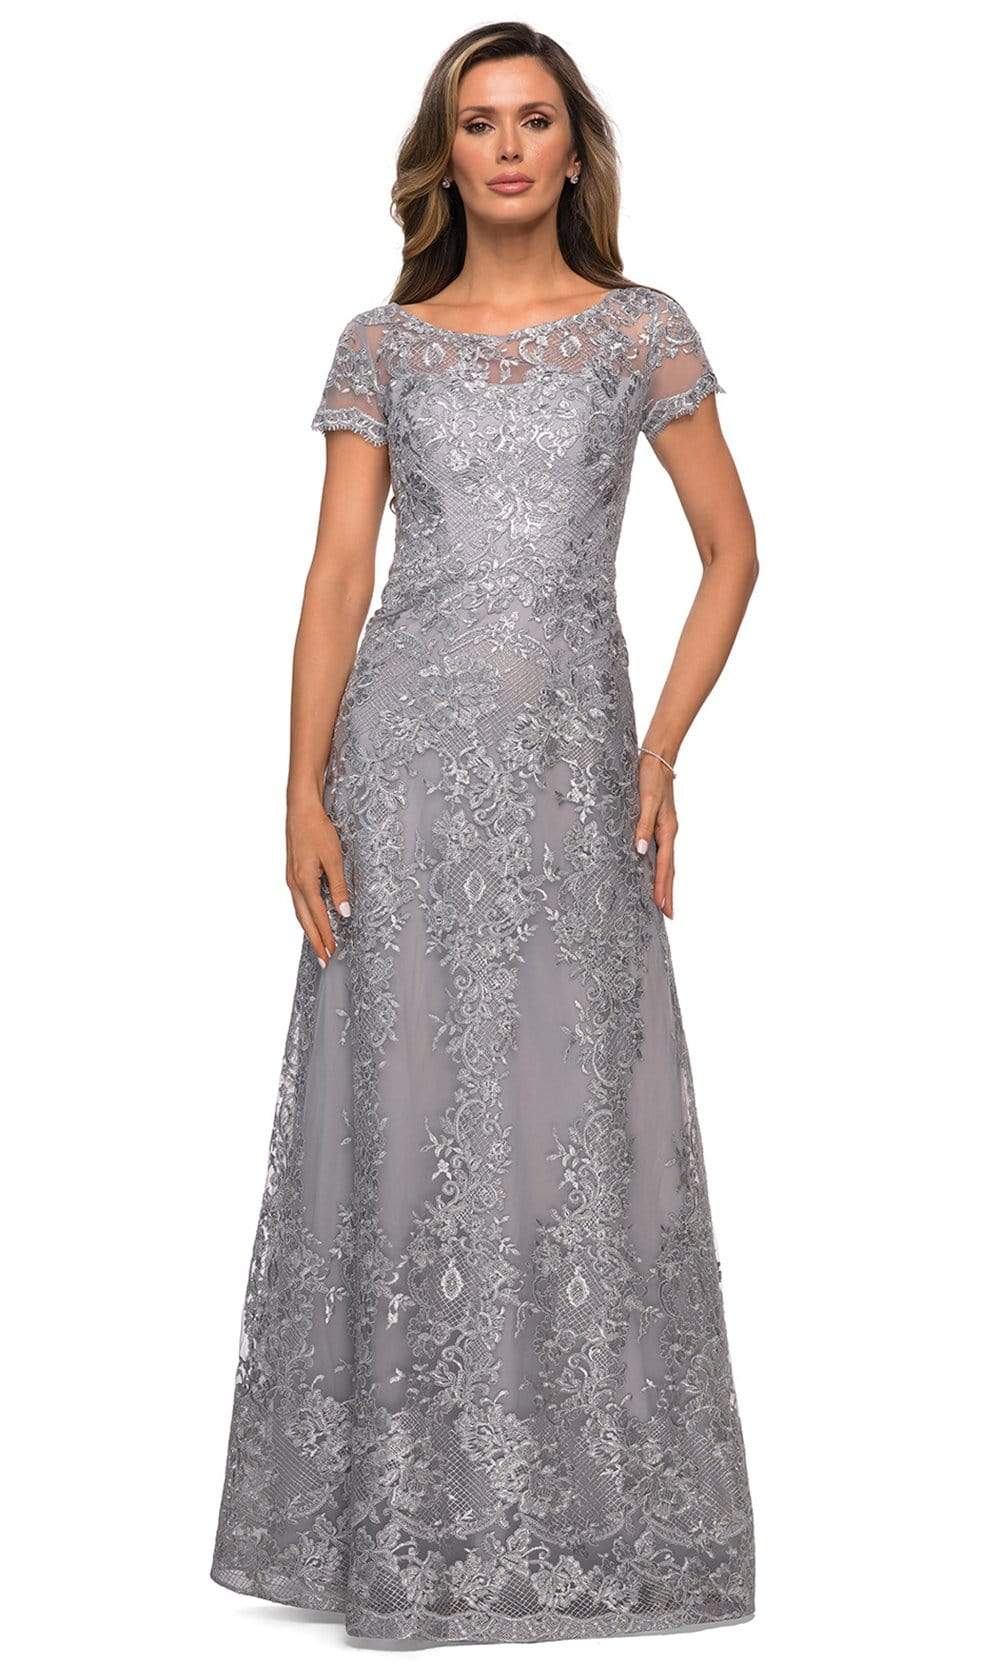 La Femme - 27935 Illusion Neckline Beaded Lace Ornate A-Line Gown
